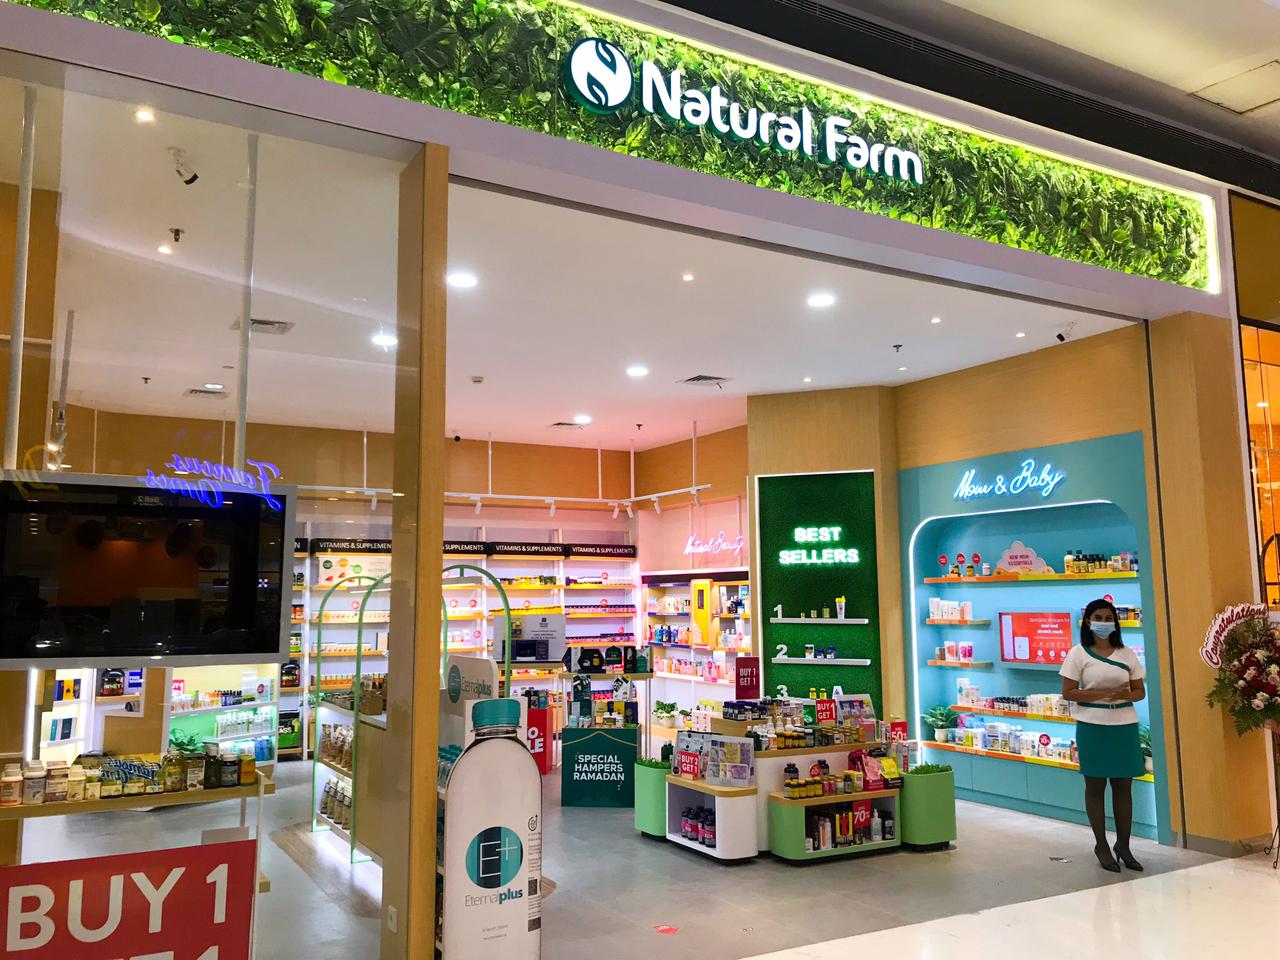 Natural Farm shop front in lippo mall puri st. moritz